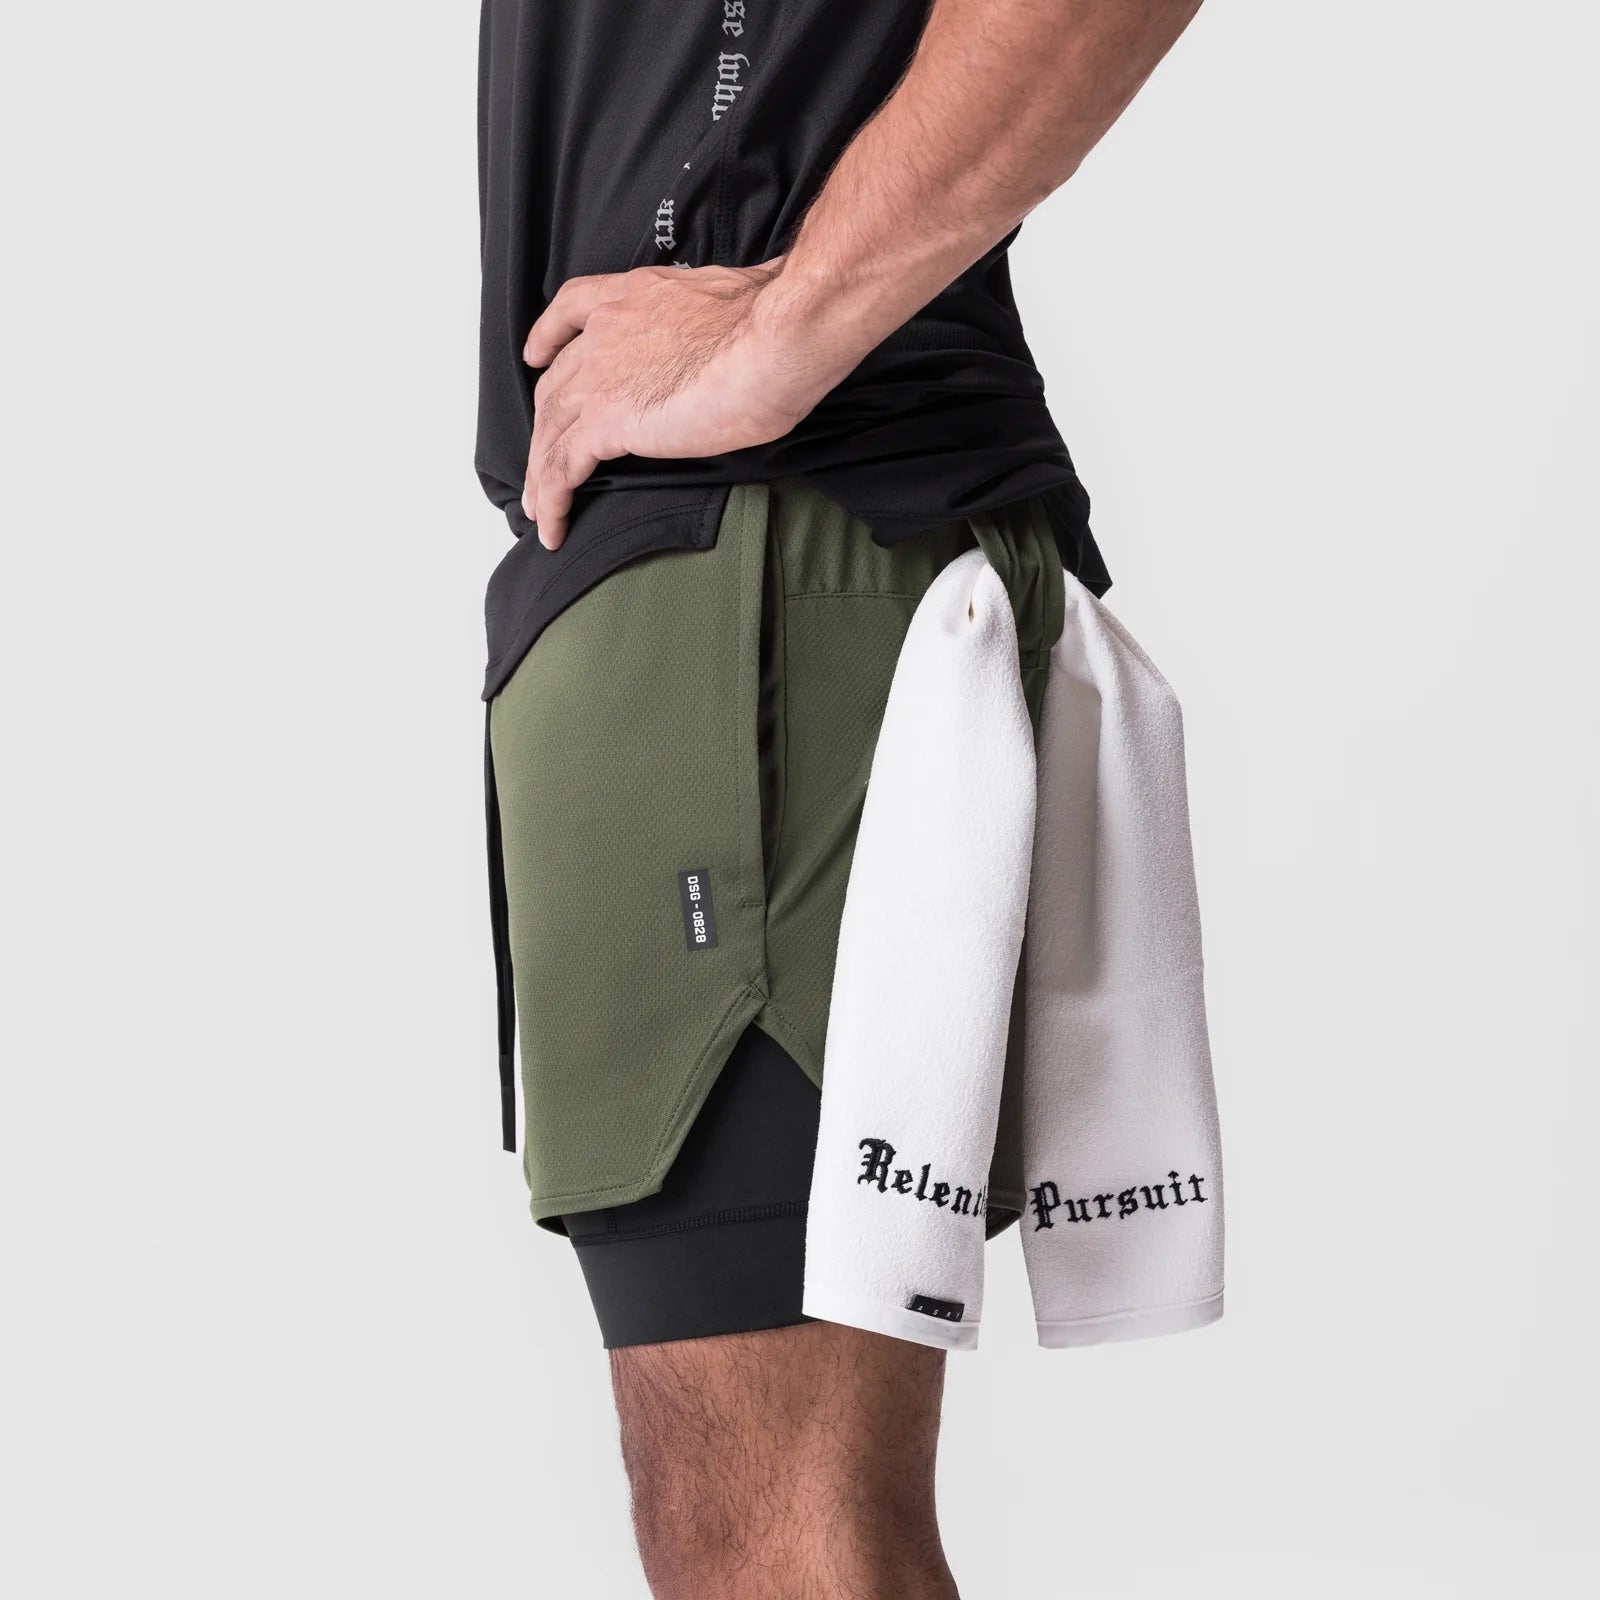 AeroSilver® 5" Liner Shorts